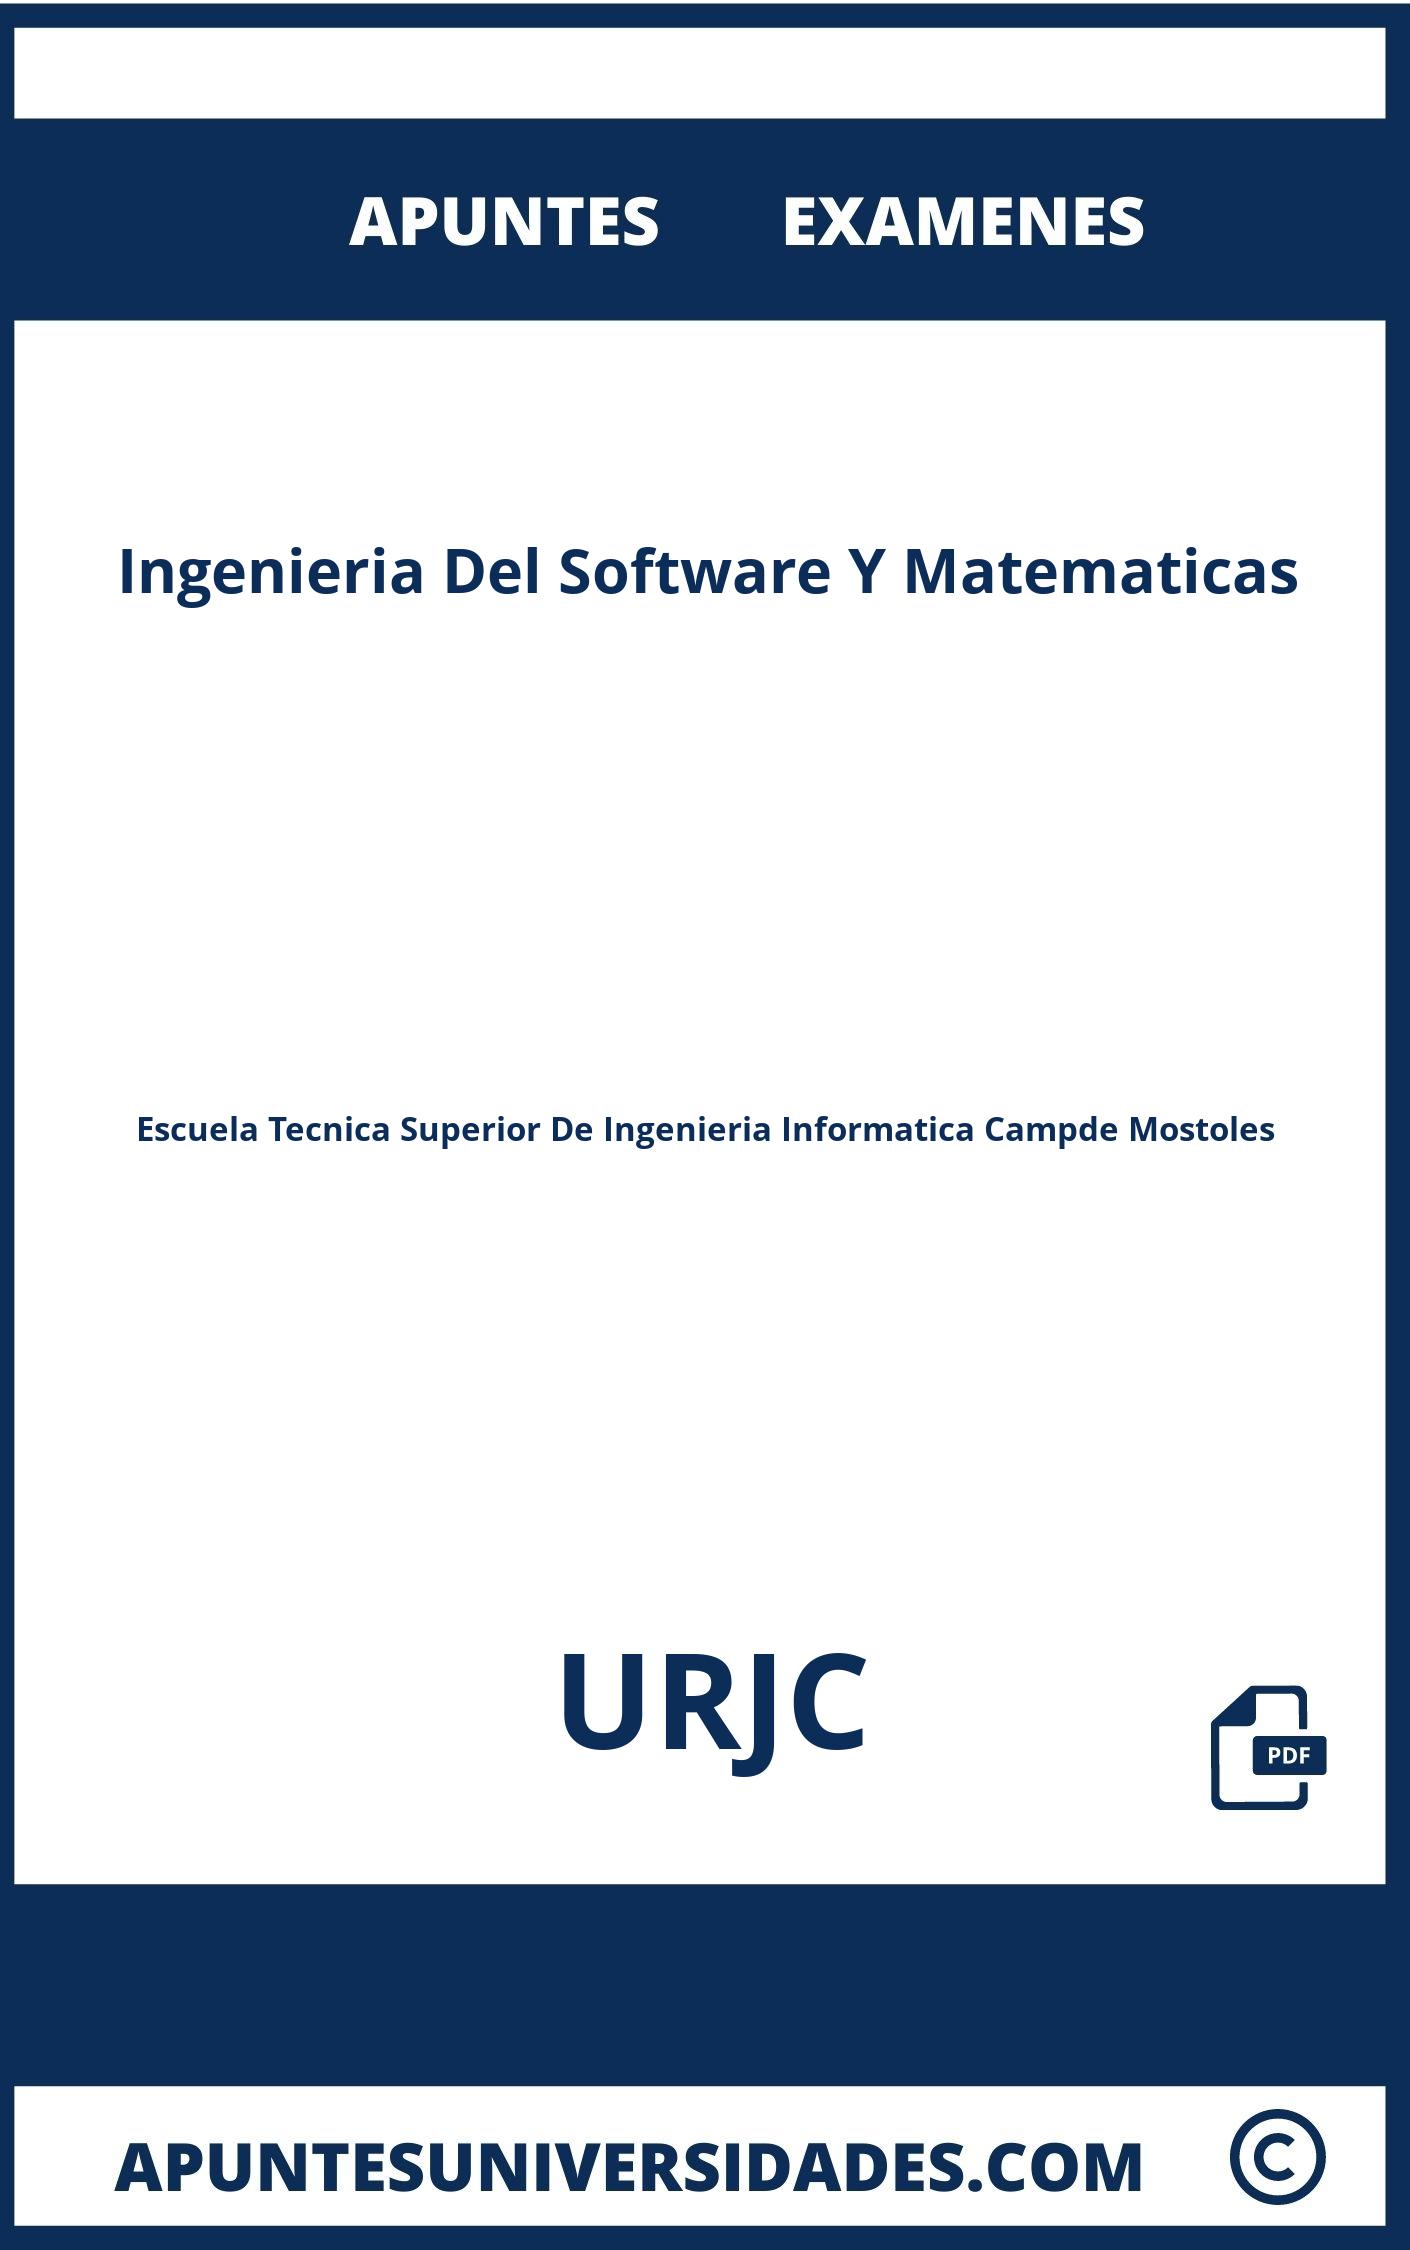 Apuntes y Examenes de Ingenieria Del Software Y Matematicas URJC